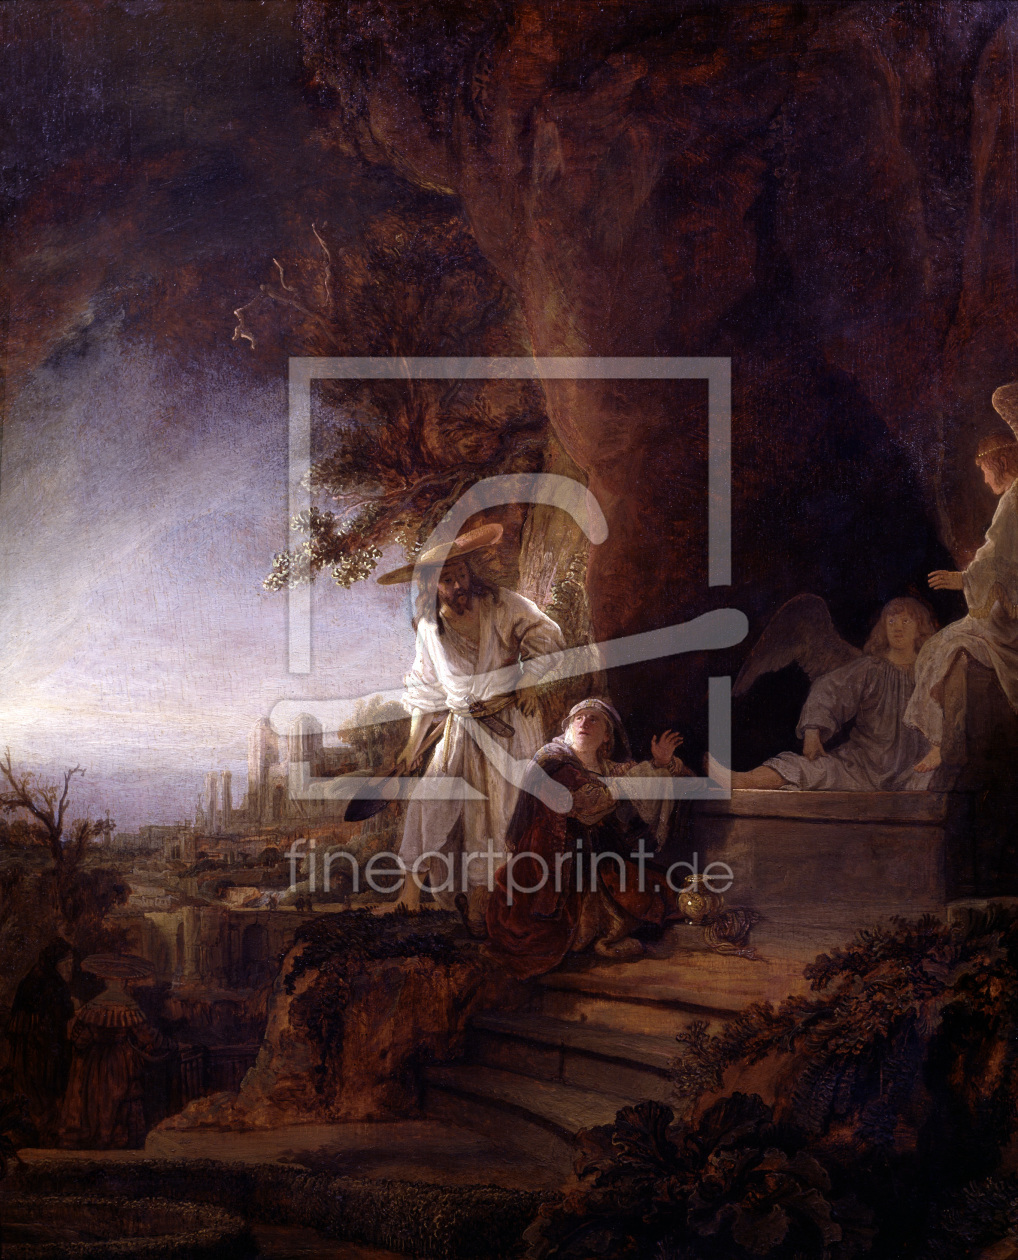 Bild-Nr.: 30007545 Rembrandt / Risen Christ appears / 1638 erstellt von Rembrandt Harmenszoon van Rijn